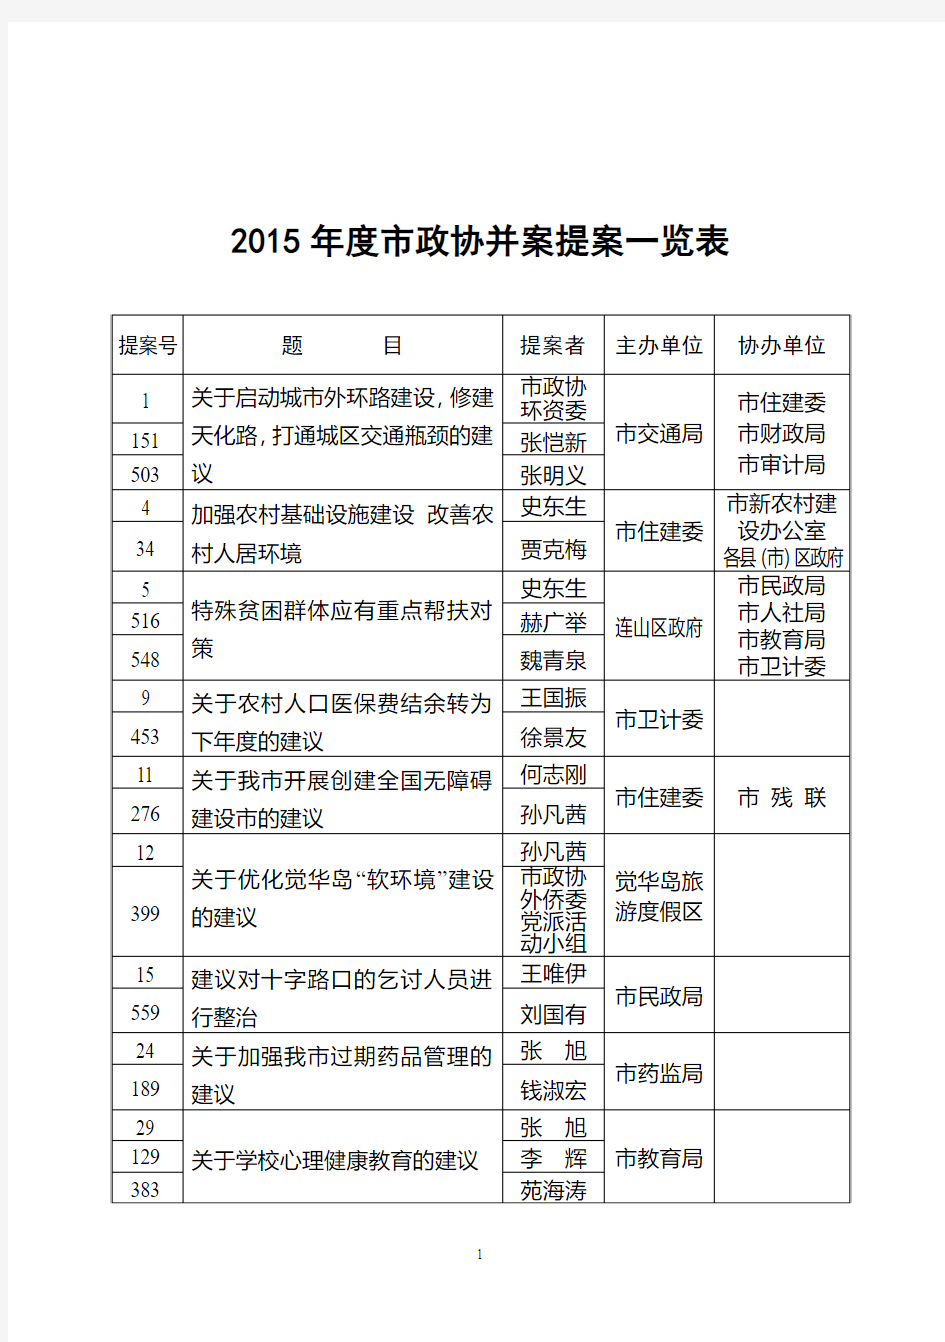 2015年度市政协并案提案一览表